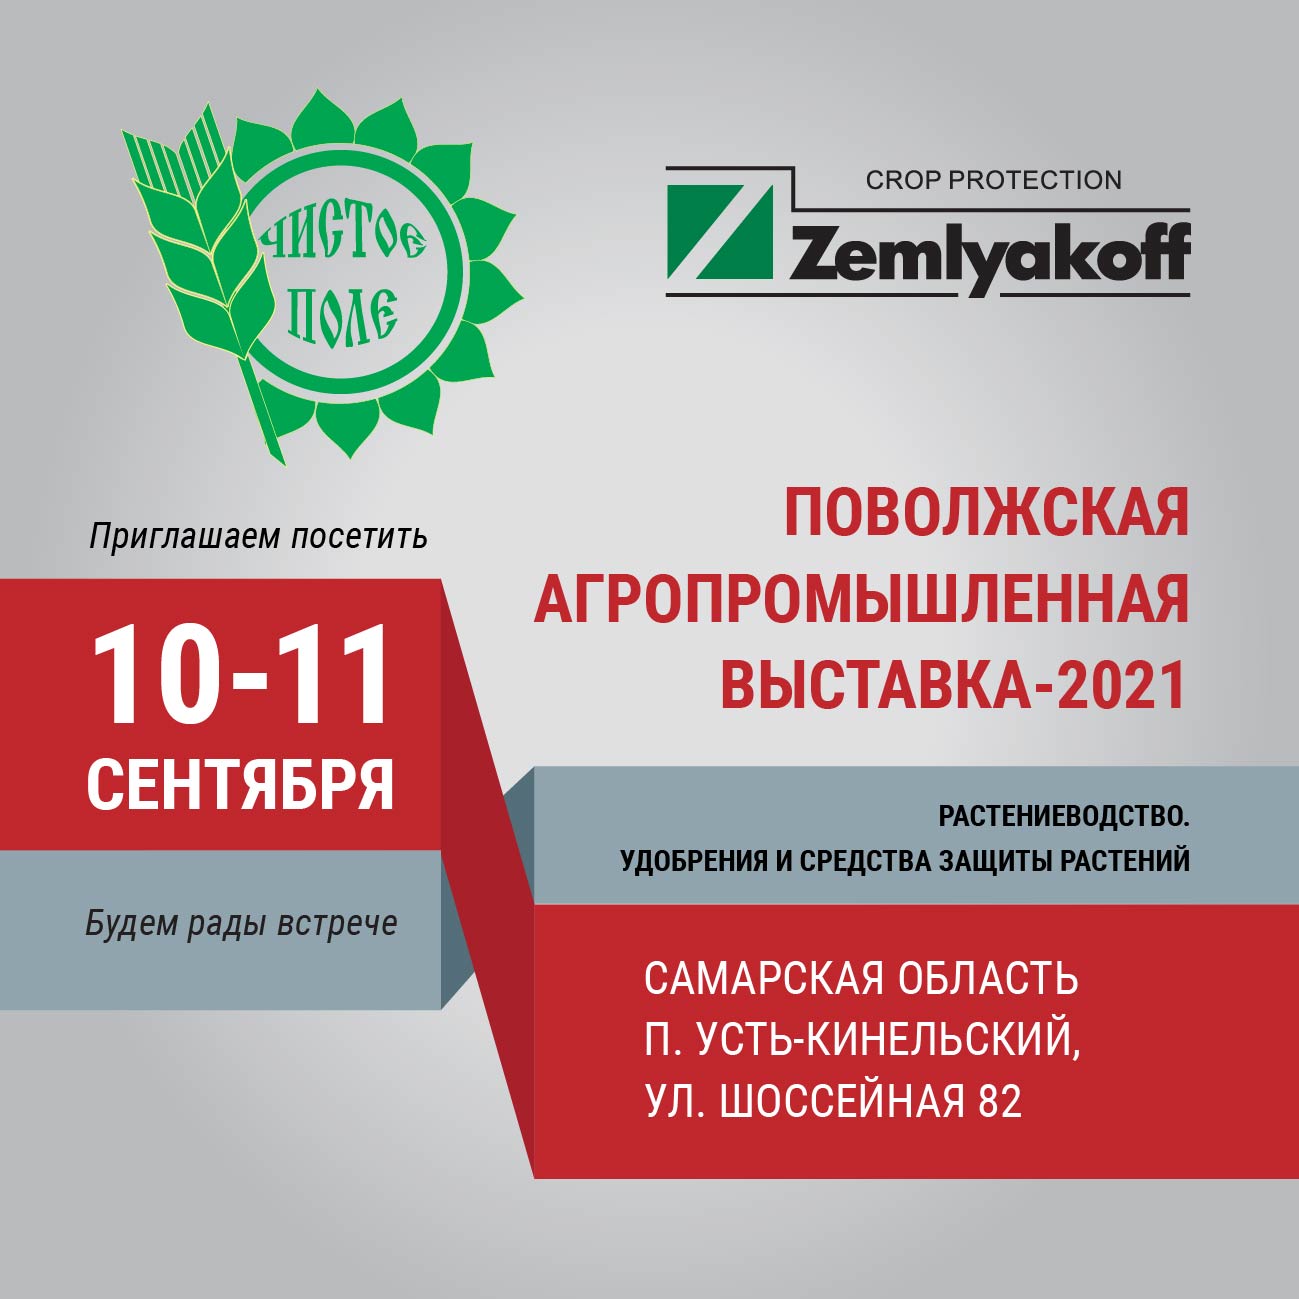 Поволжская агропромышленная выставка – 2021 в Самарской области